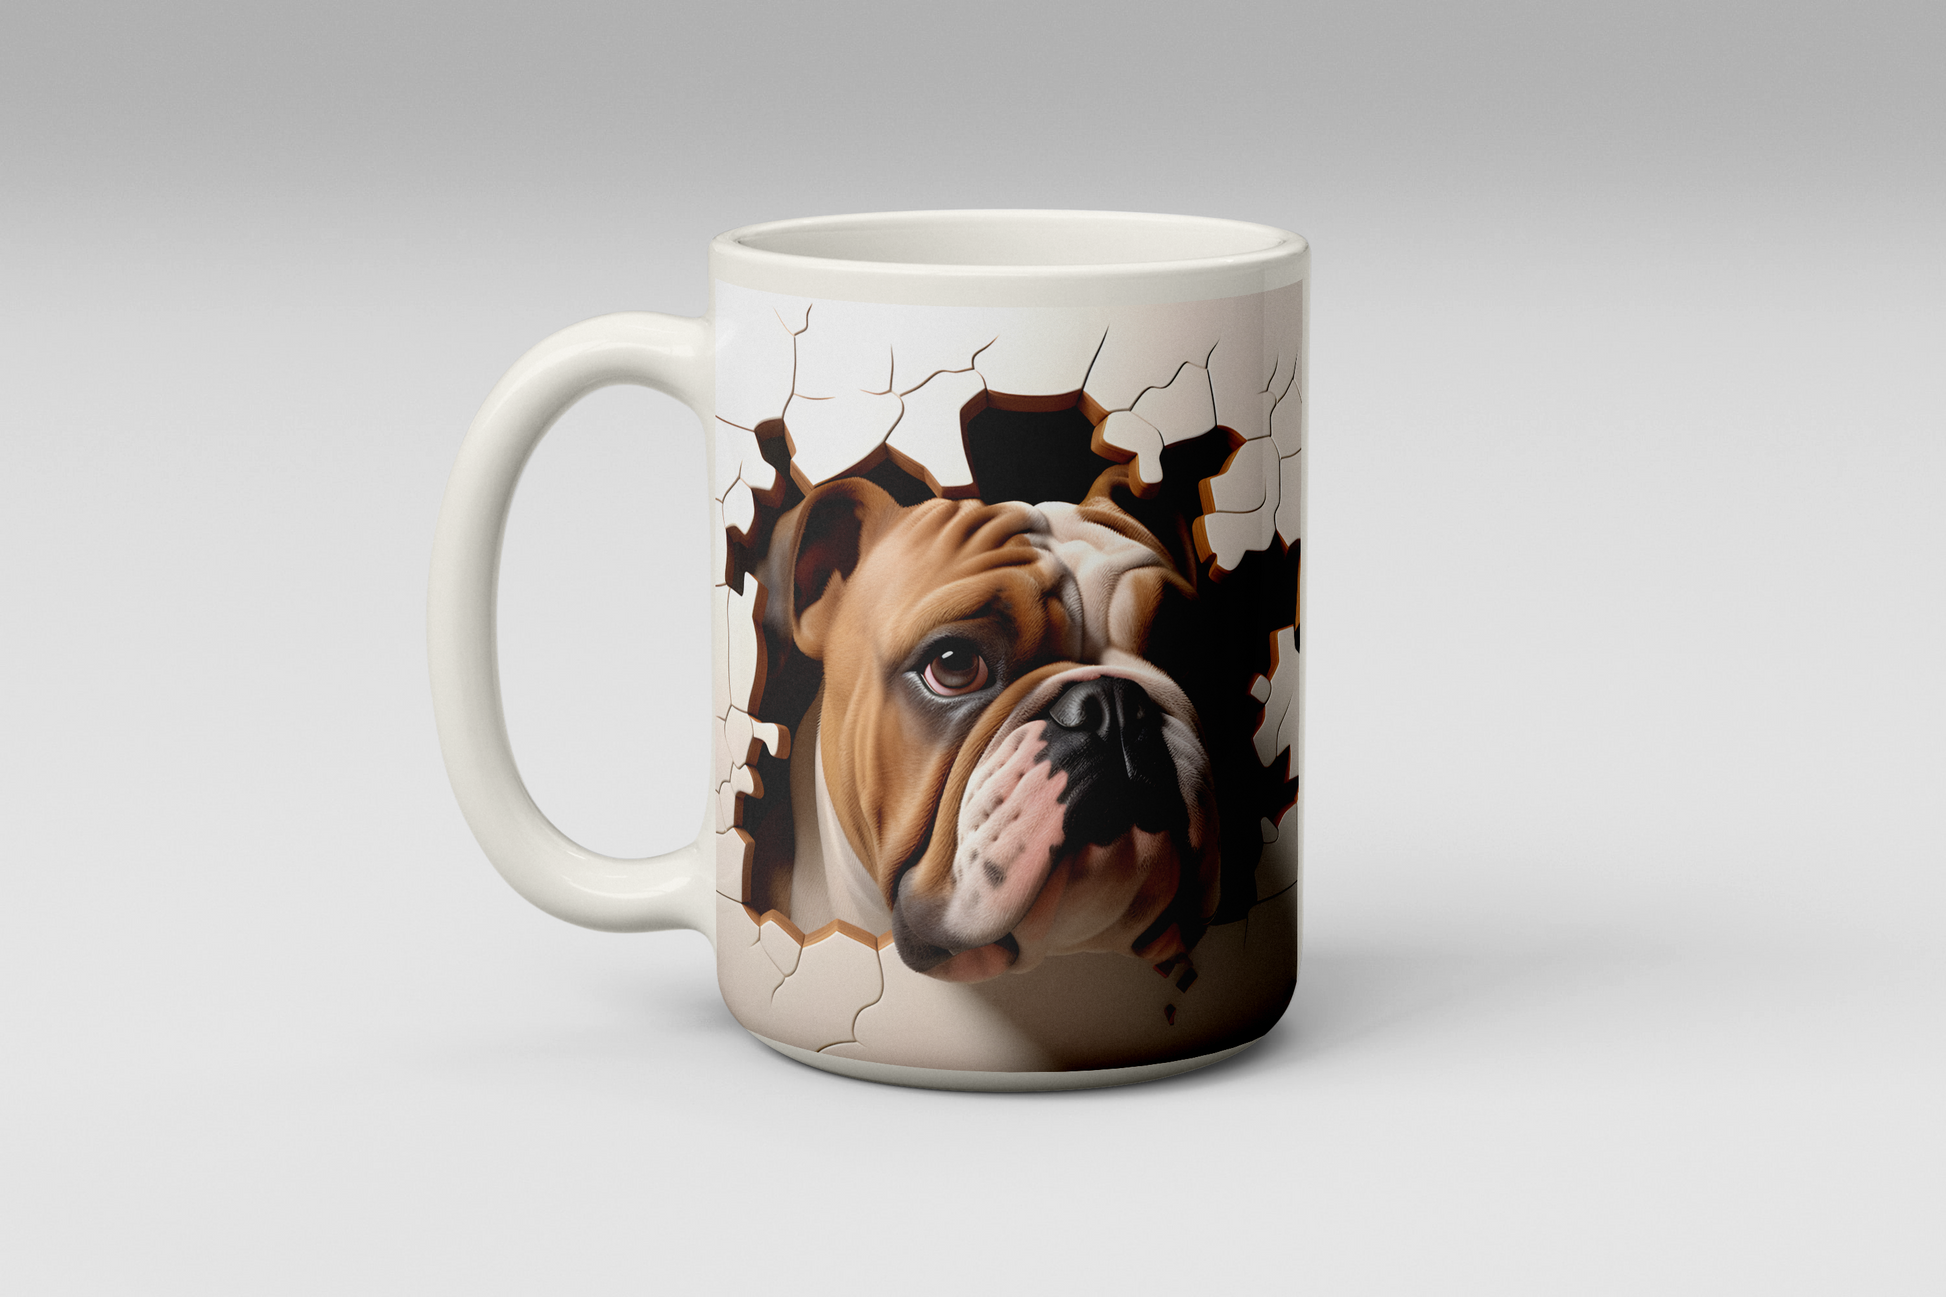  Bulldog Smashing Out Coffee Mug by Free Spirit Accessories sold by Free Spirit Accessories